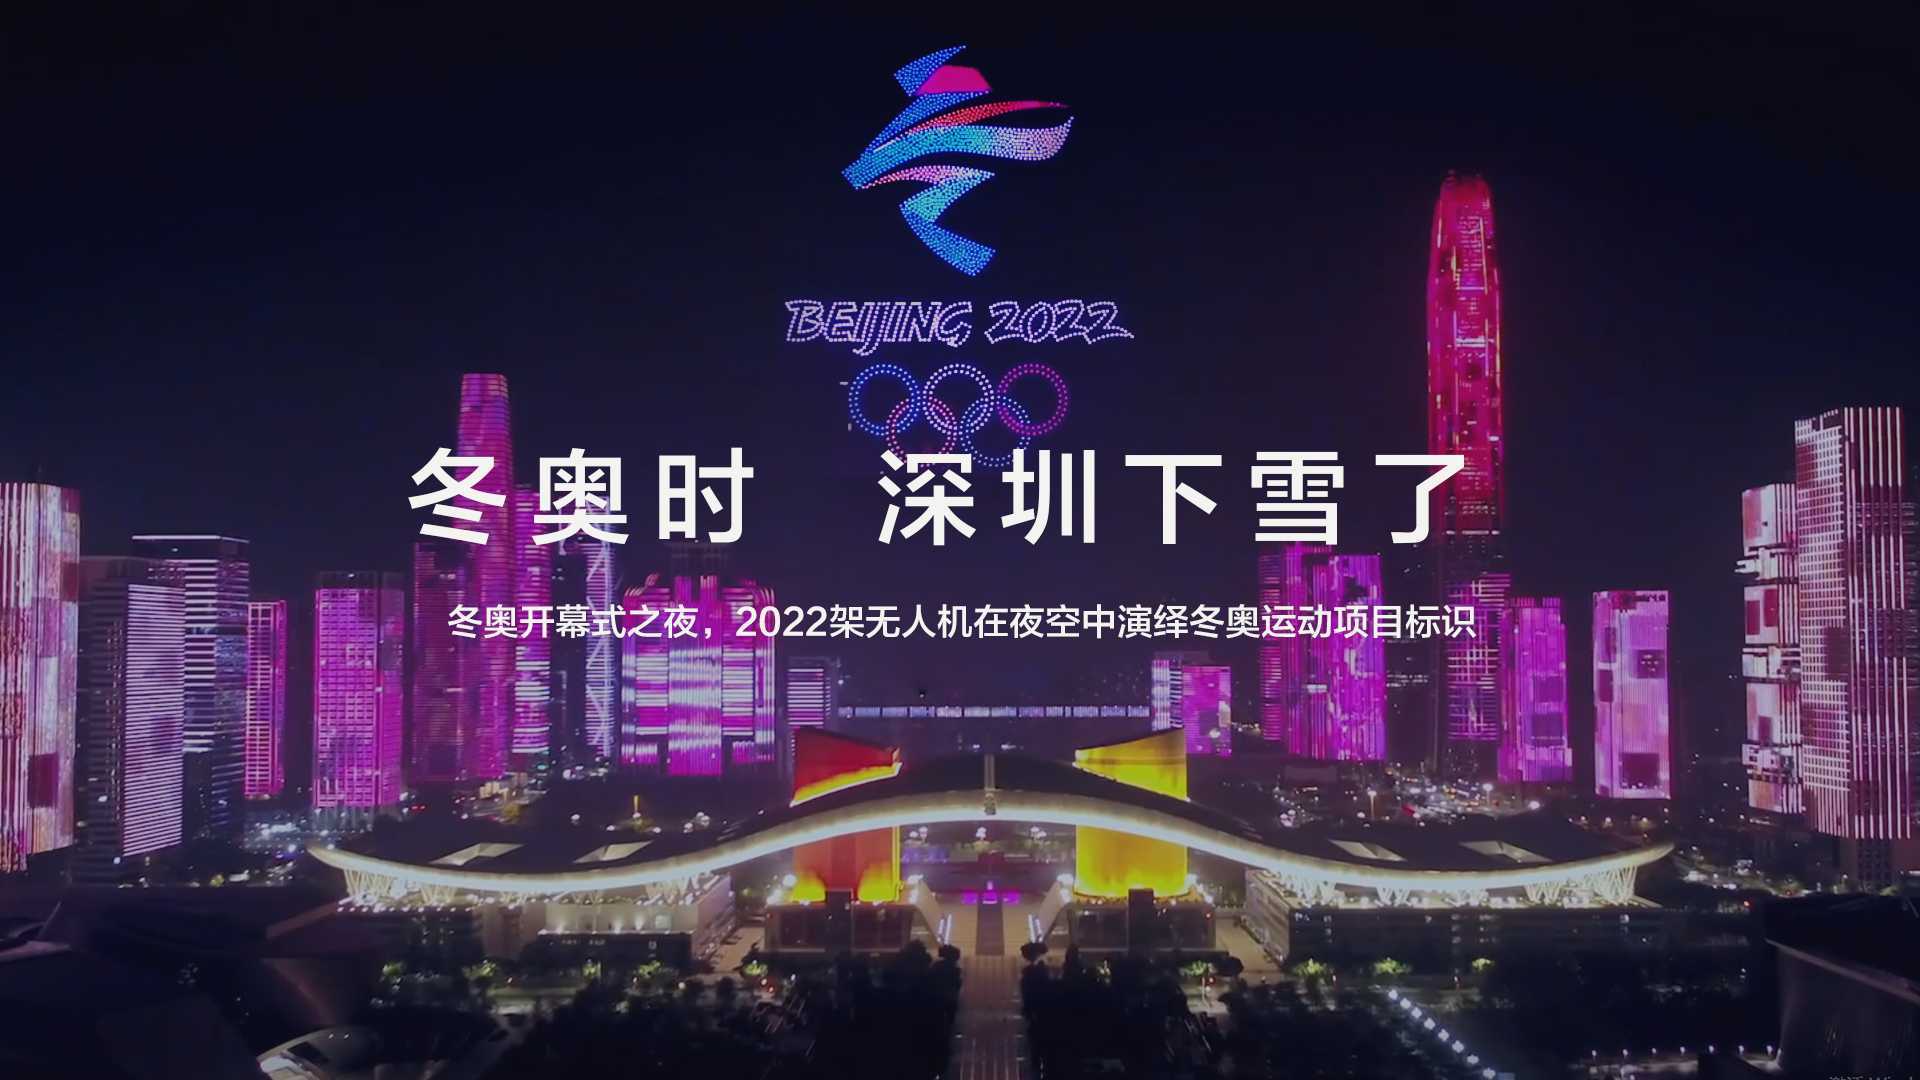 2022架无人机在夜空中演绎冬奥运动项目标识祝福北京冬奥，为运动健儿加油！